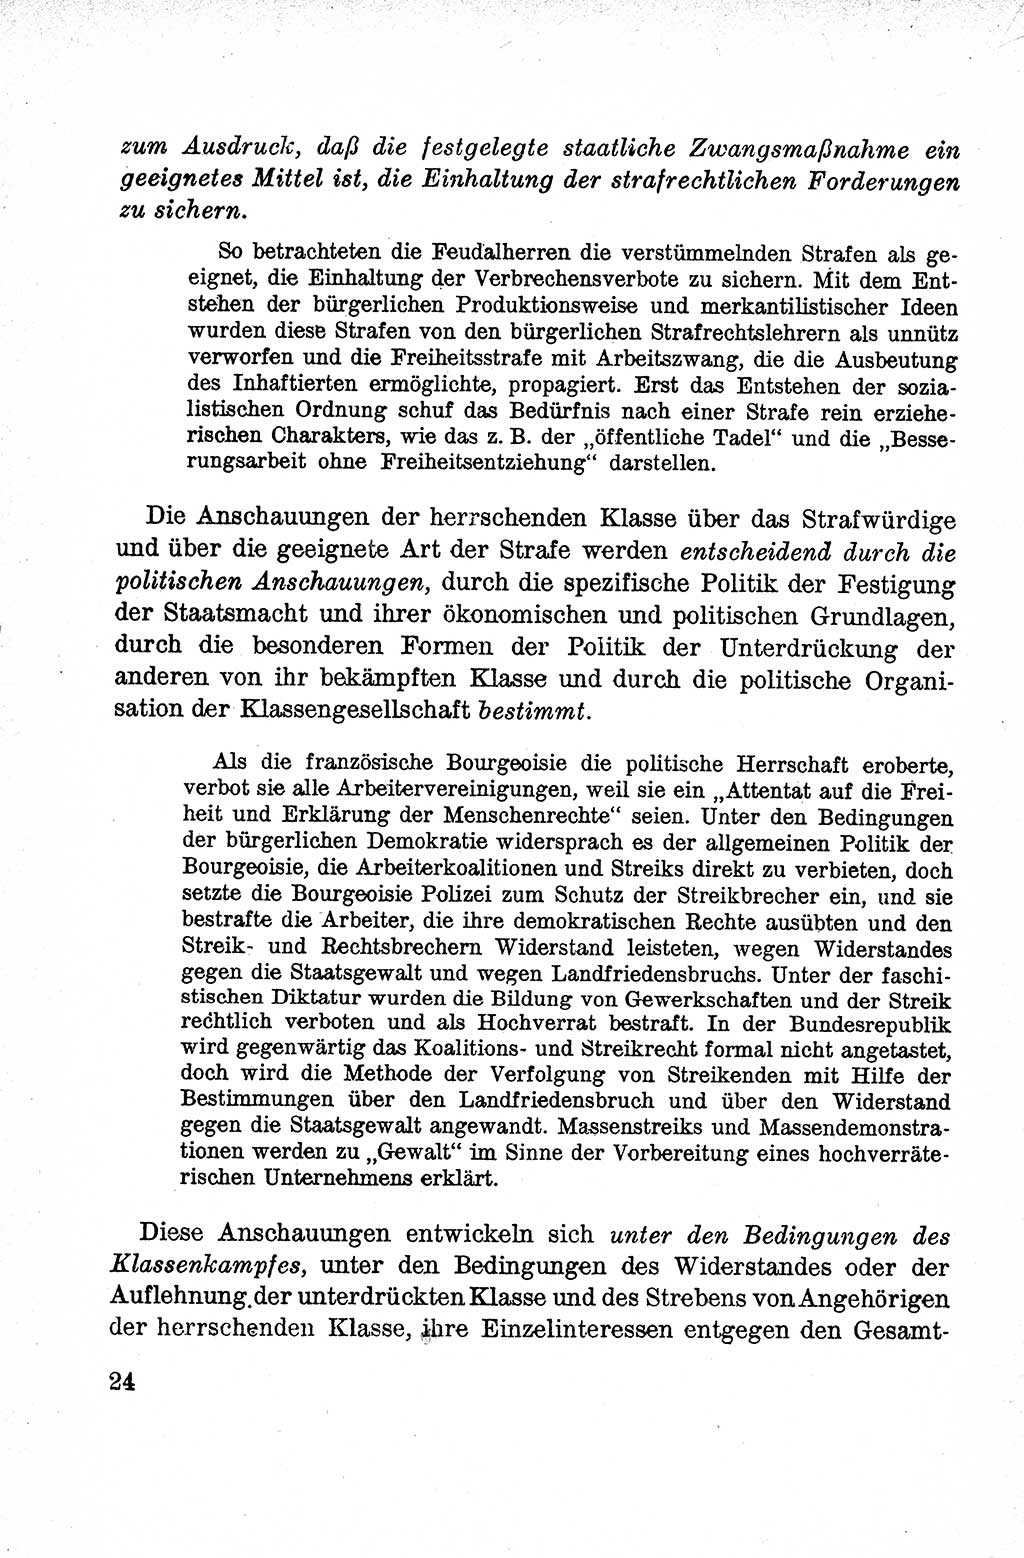 Lehrbuch des Strafrechts der Deutschen Demokratischen Republik (DDR), Allgemeiner Teil 1959, Seite 24 (Lb. Strafr. DDR AT 1959, S. 24)